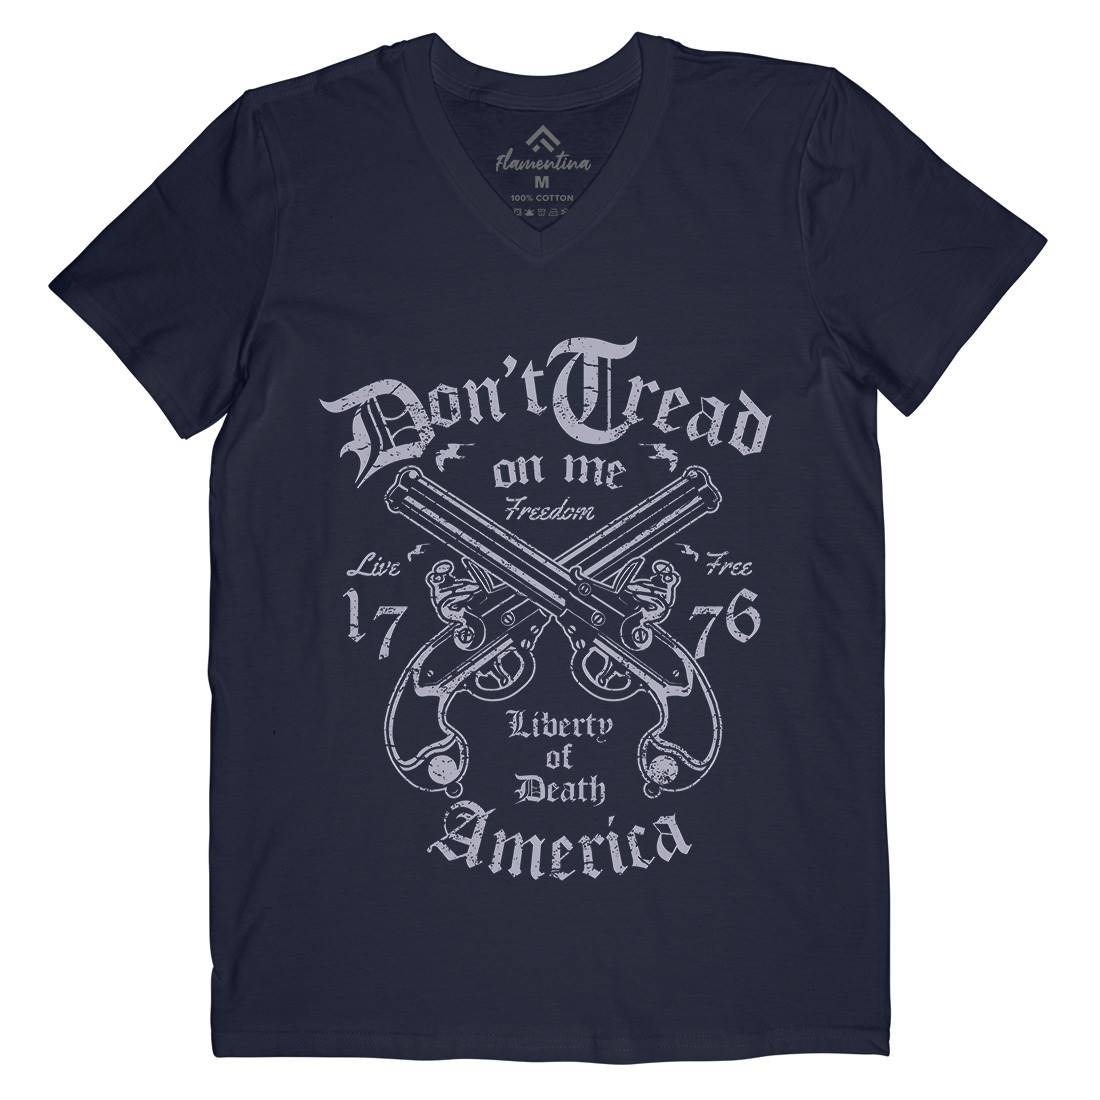 Liberty Of Death Mens Organic V-Neck T-Shirt American A084